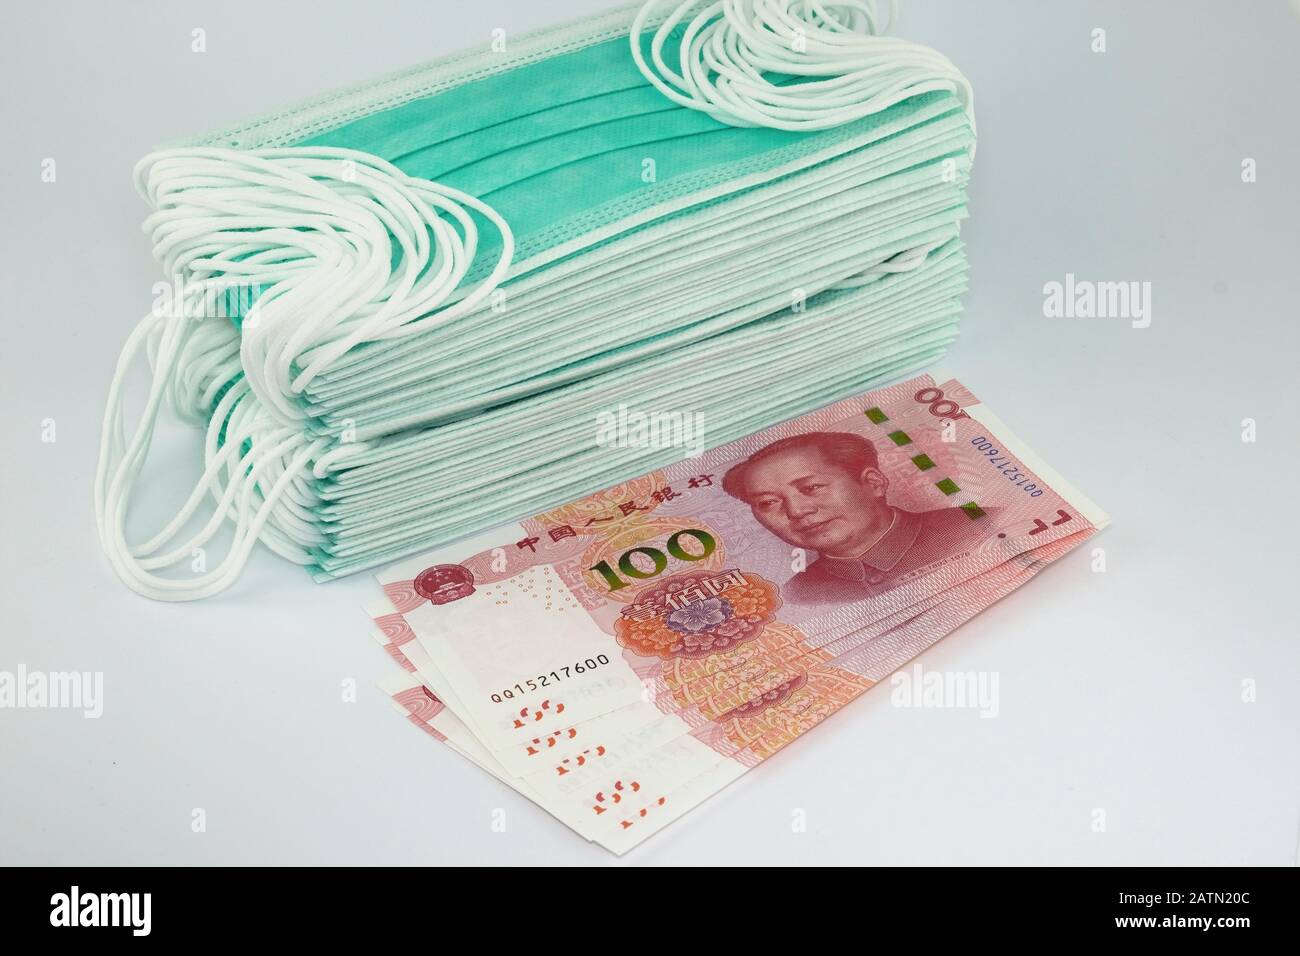 Máscaras faciales y dinero para cirugía antivirus. Foto conceptual para la escasez y alto precio de las máscaras durante la cuarentena en China. Foto de stock